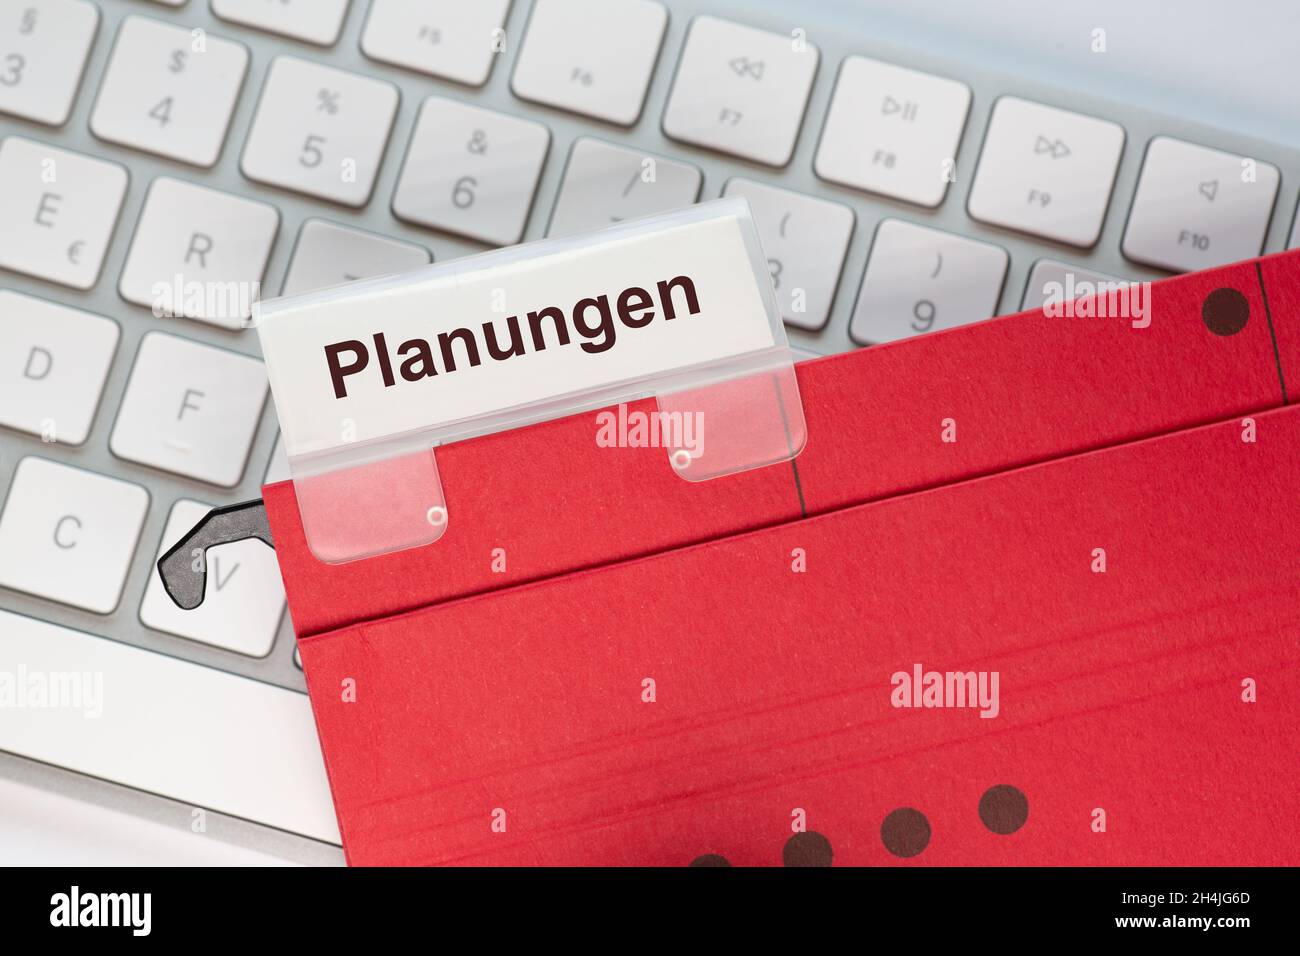 Le mot allemand pour la planification peut être vu sur l'étiquette d'un dossier de suspension rouge.Le dossier d'affichage se trouve sur un clavier d'ordinateur. Banque D'Images